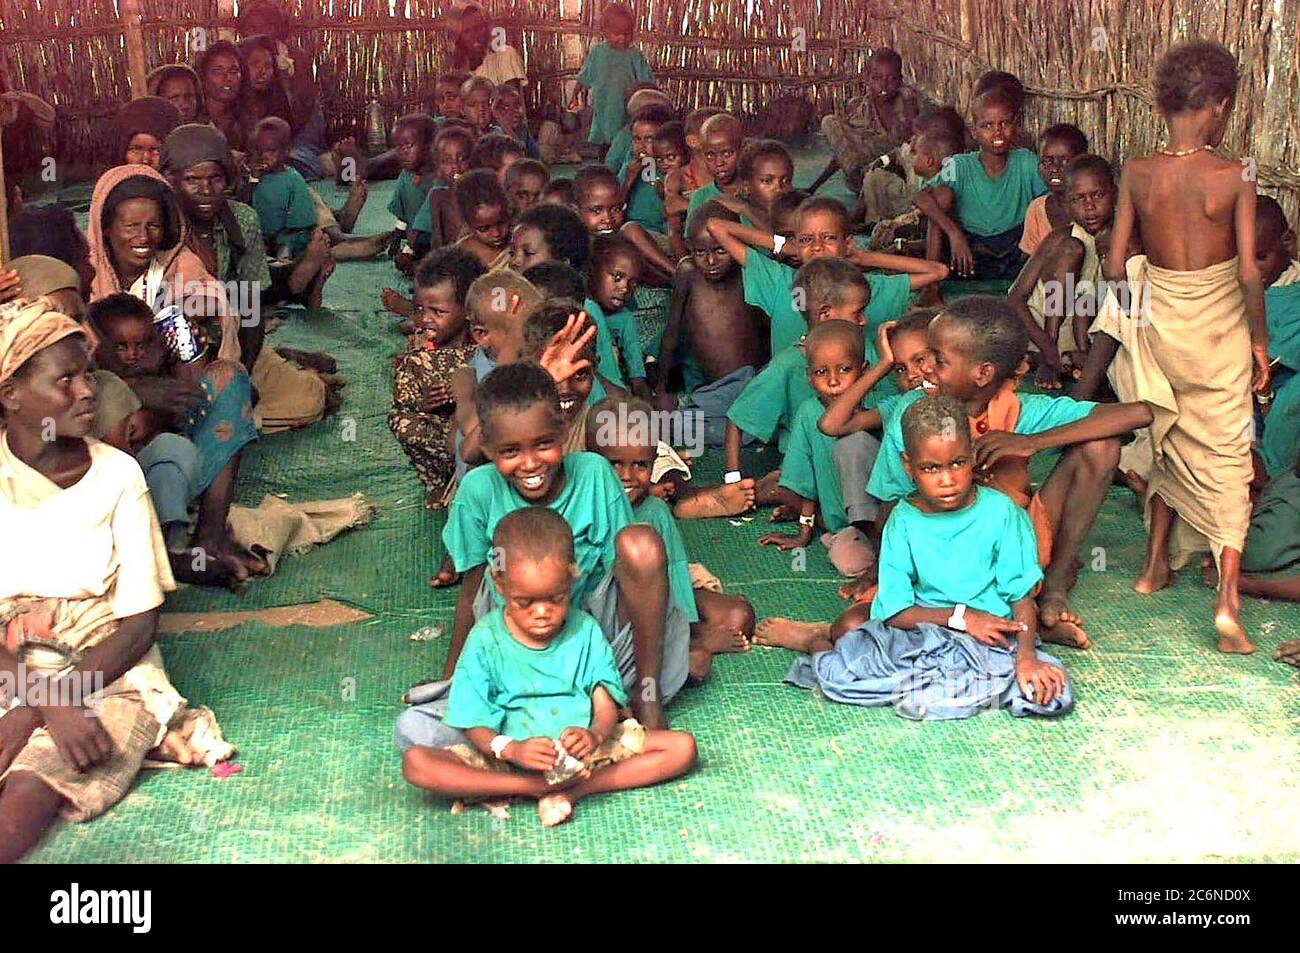 1992 - dritto girato all'interno di Bamboo Hut a diversi bambini Somali seduti in fila su di un tappeto verde. Quasi tutti i bambini sono indossando le t-shirt verdi. Alcuni vecchi donne somale sono visto seduto in una fila a sinistra del telaio. Foto Stock